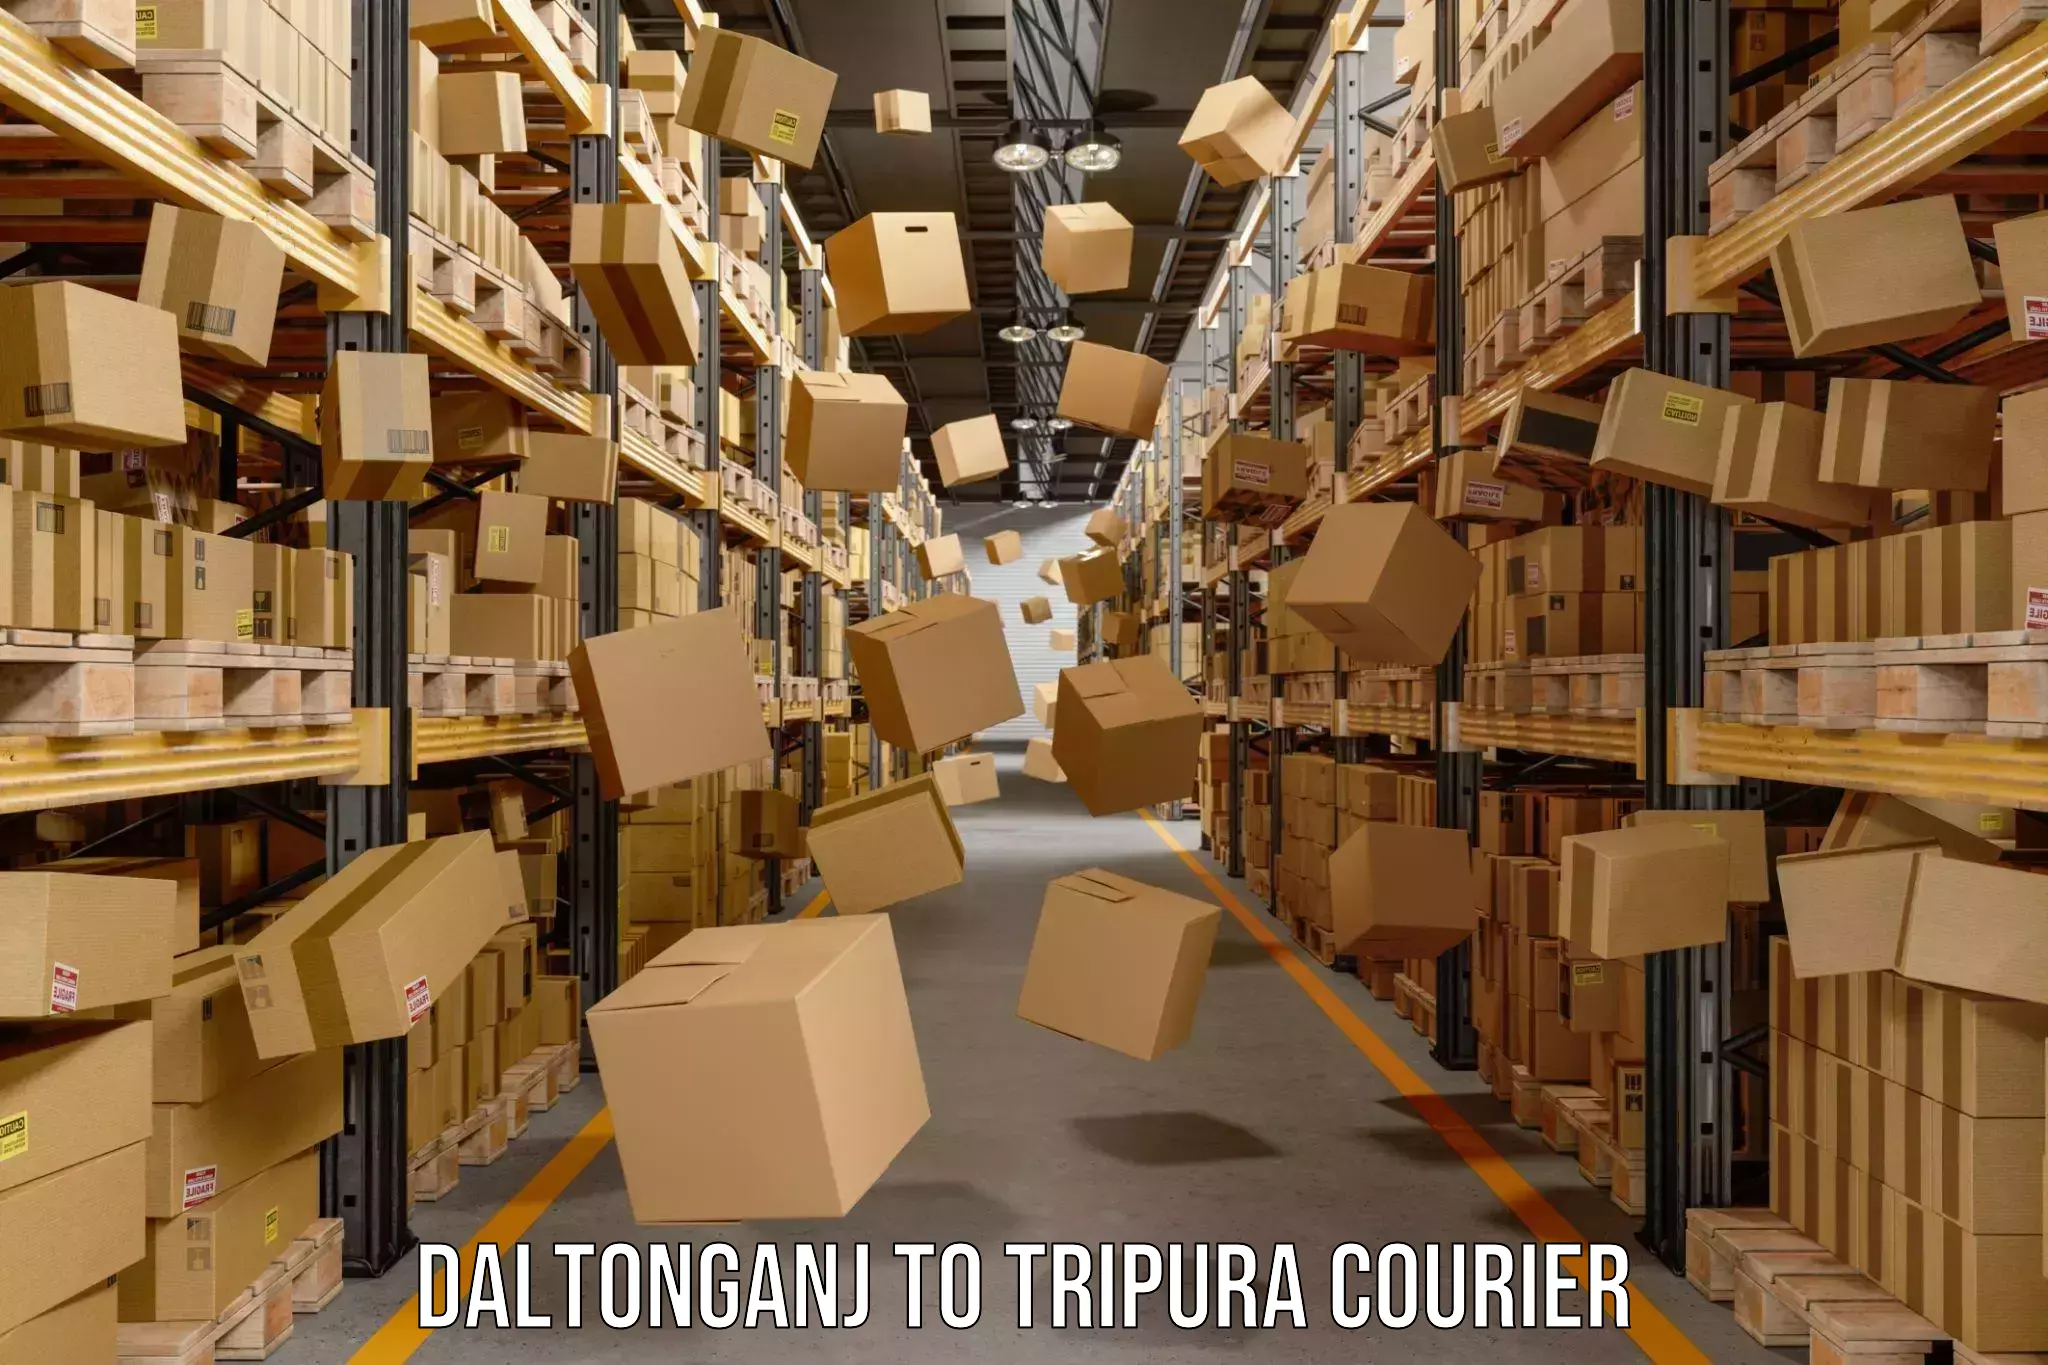 Courier service comparison Daltonganj to Udaipur Tripura